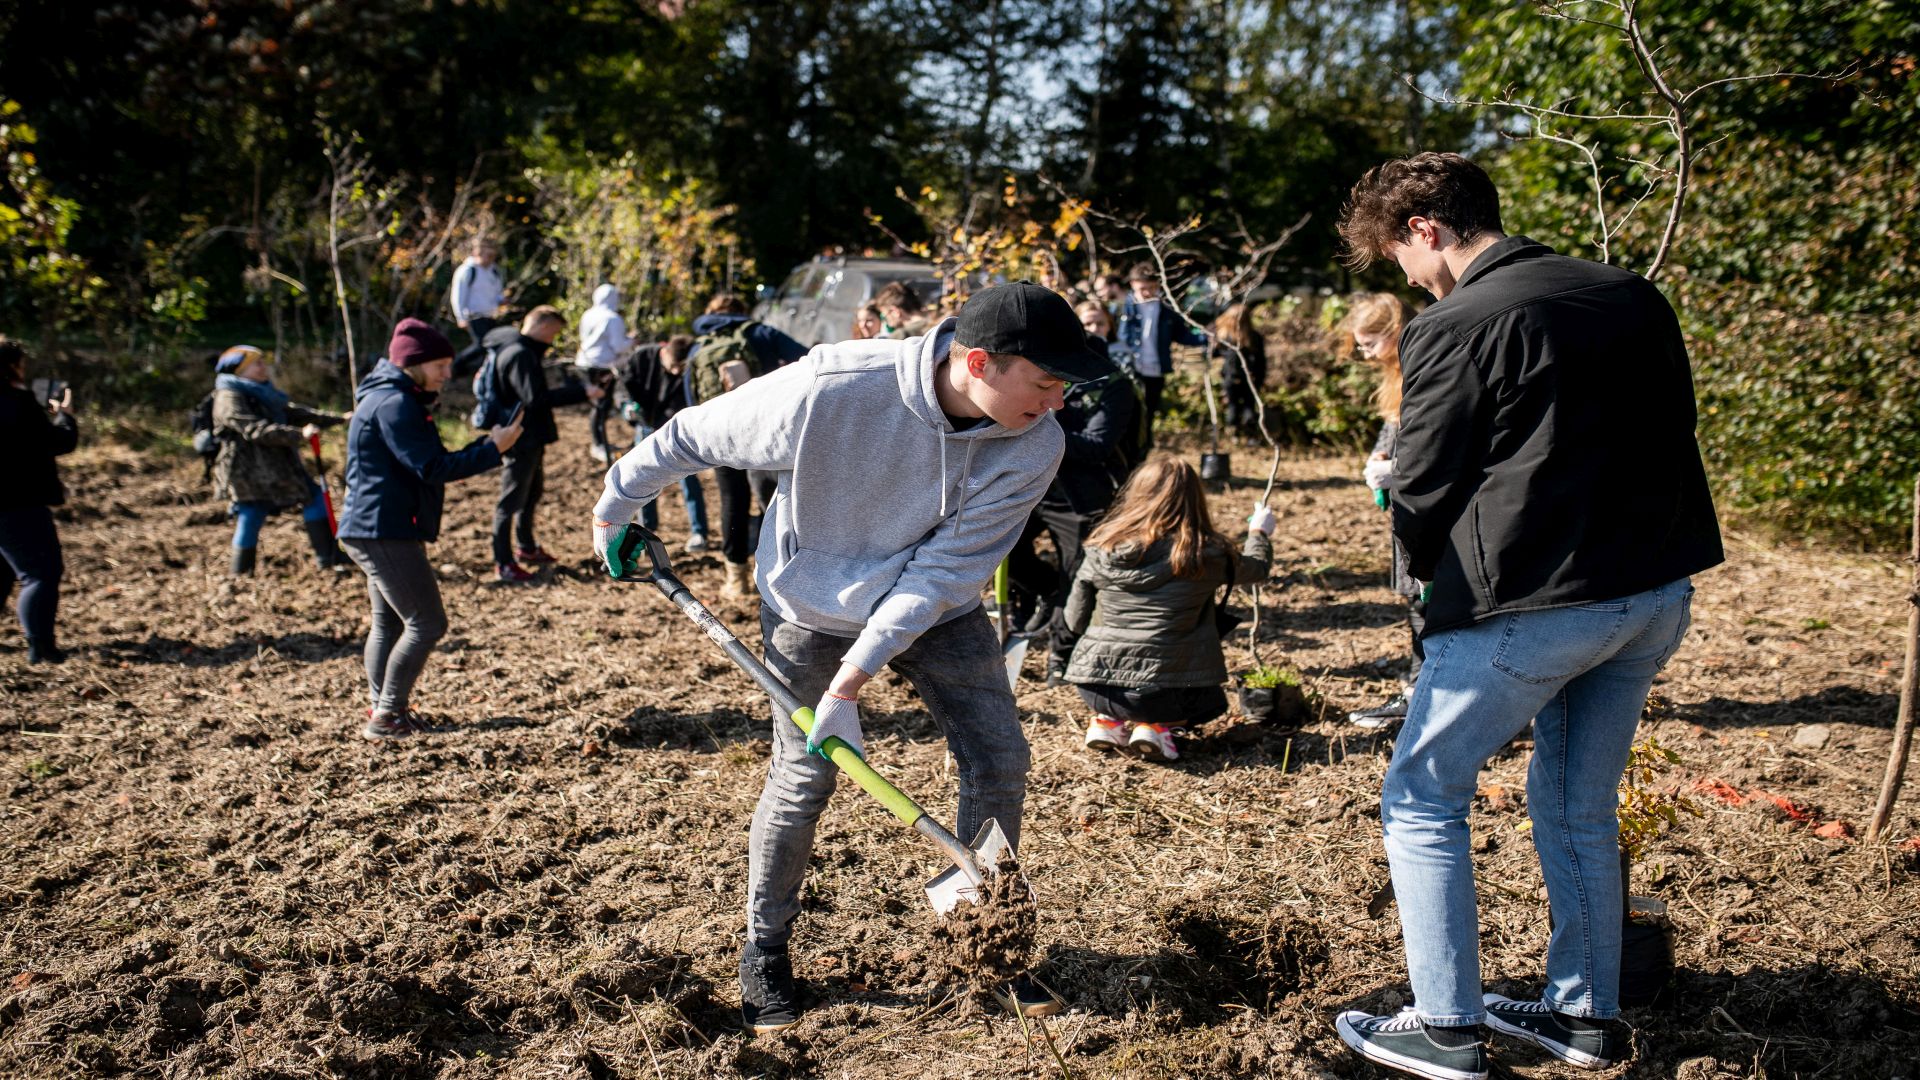 Studentki i studenci wraz z pracownikami i dziećmi z pobliskiej szkoły sadzą małe drzewka do przygotowanego gruntu.